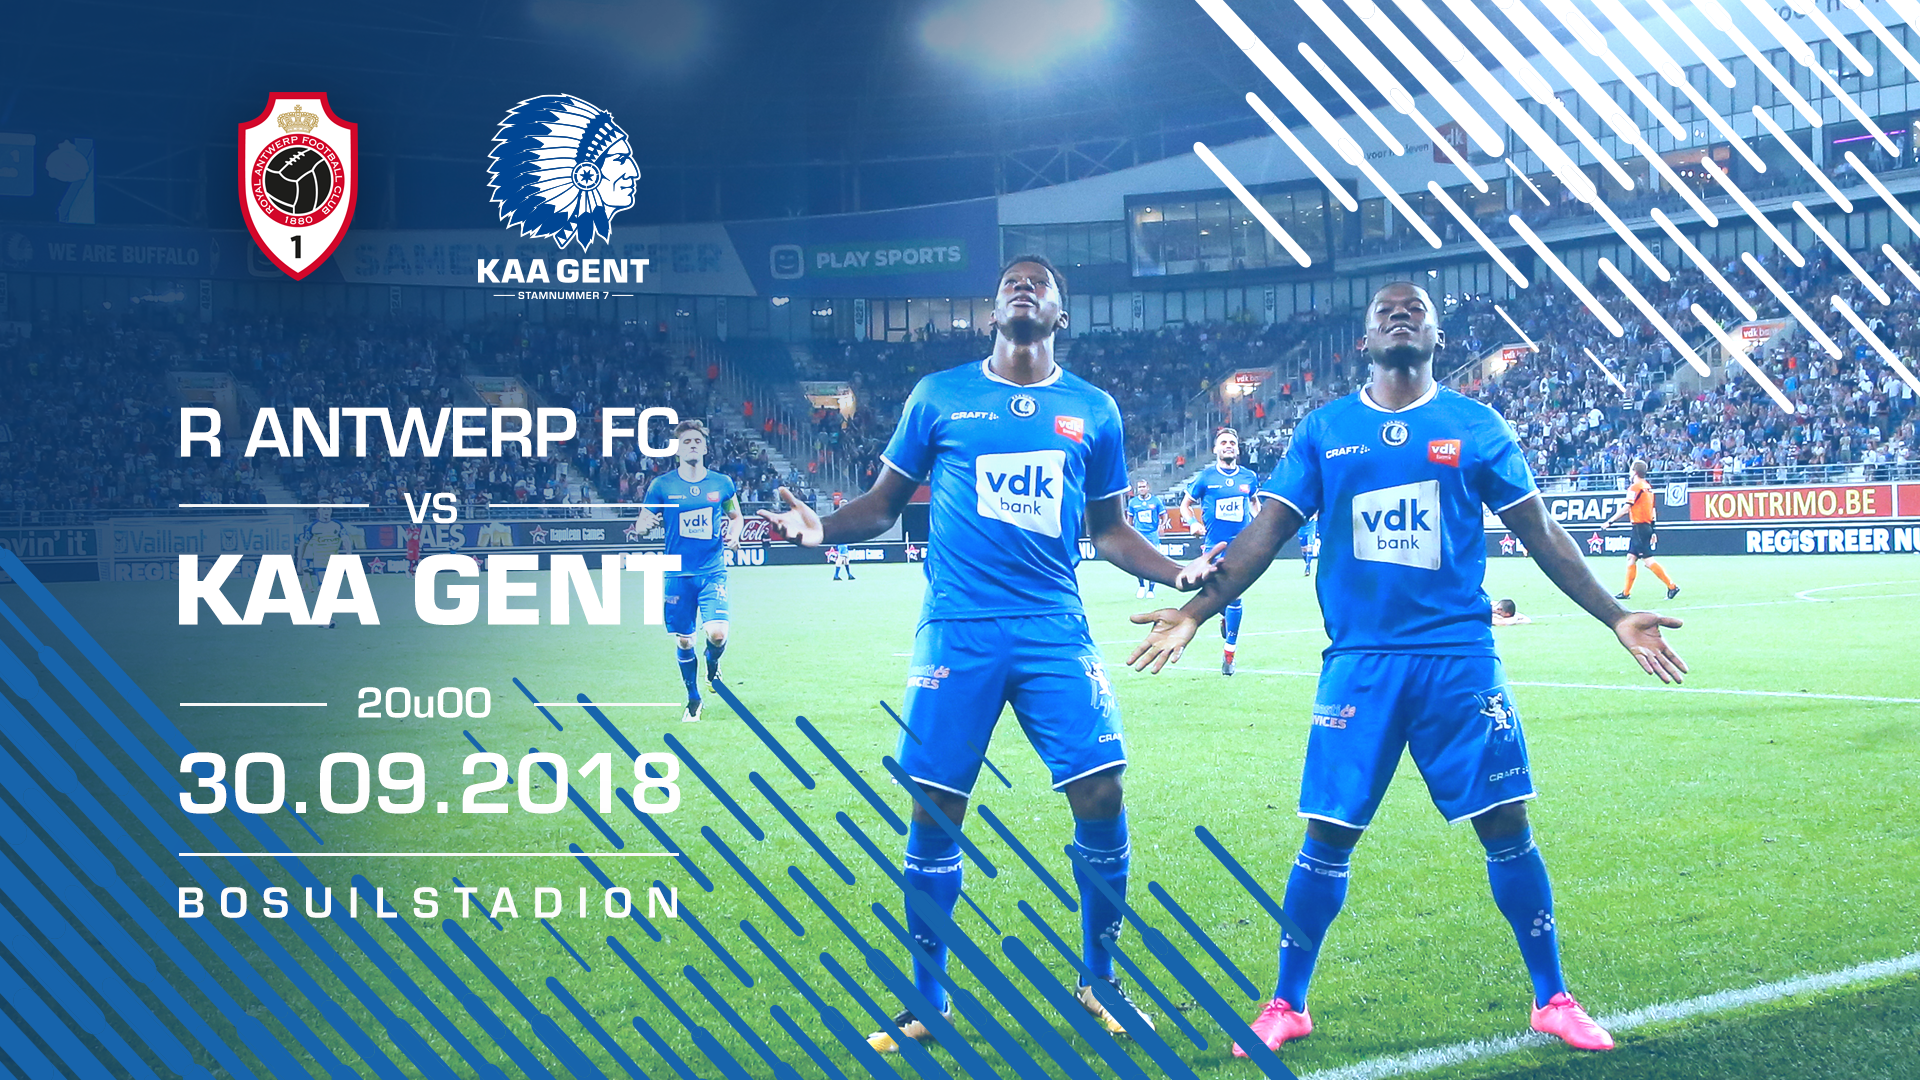 Voorbeschouwing R Antwerp FC - KAA Gent